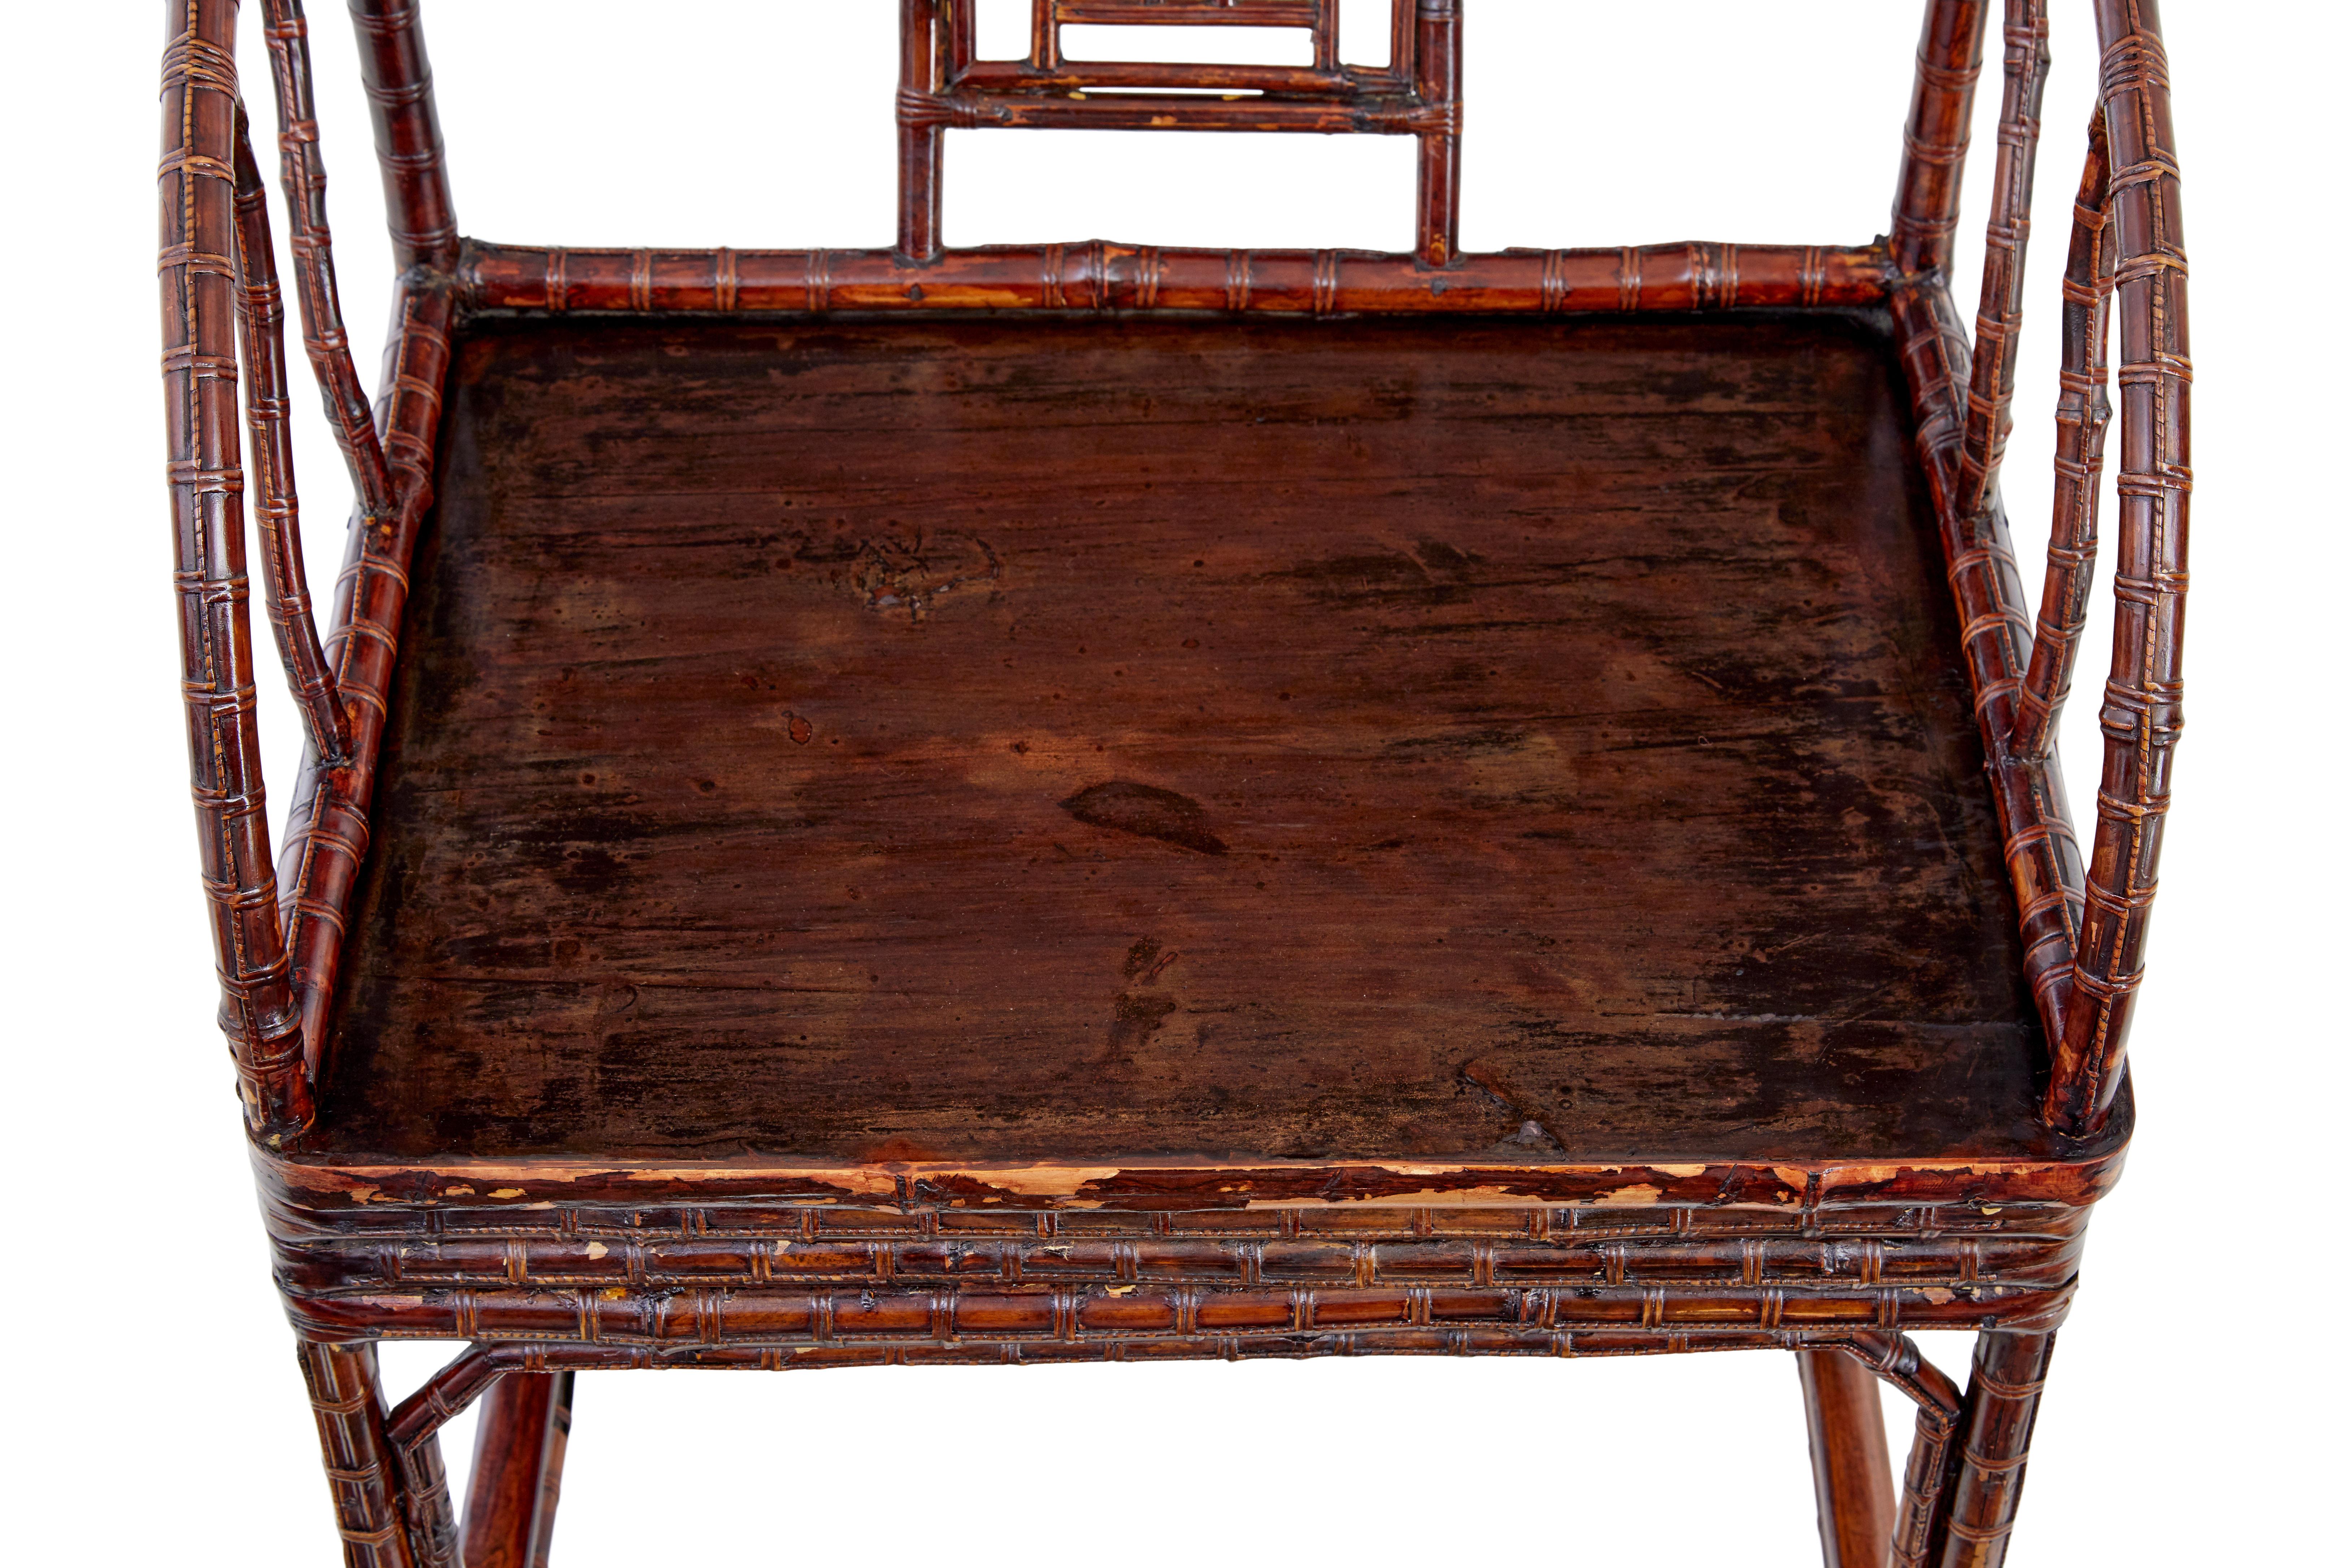 Paire de chaises en rotin d'exportation chinoise vers 1890.

De bons exemples élégants de cet artisanat chinois.

Fabriqué à partir d'un roseau fin qui a été renforcé par plusieurs couches. Le dossier est façonné avec des détails de cannage dans le